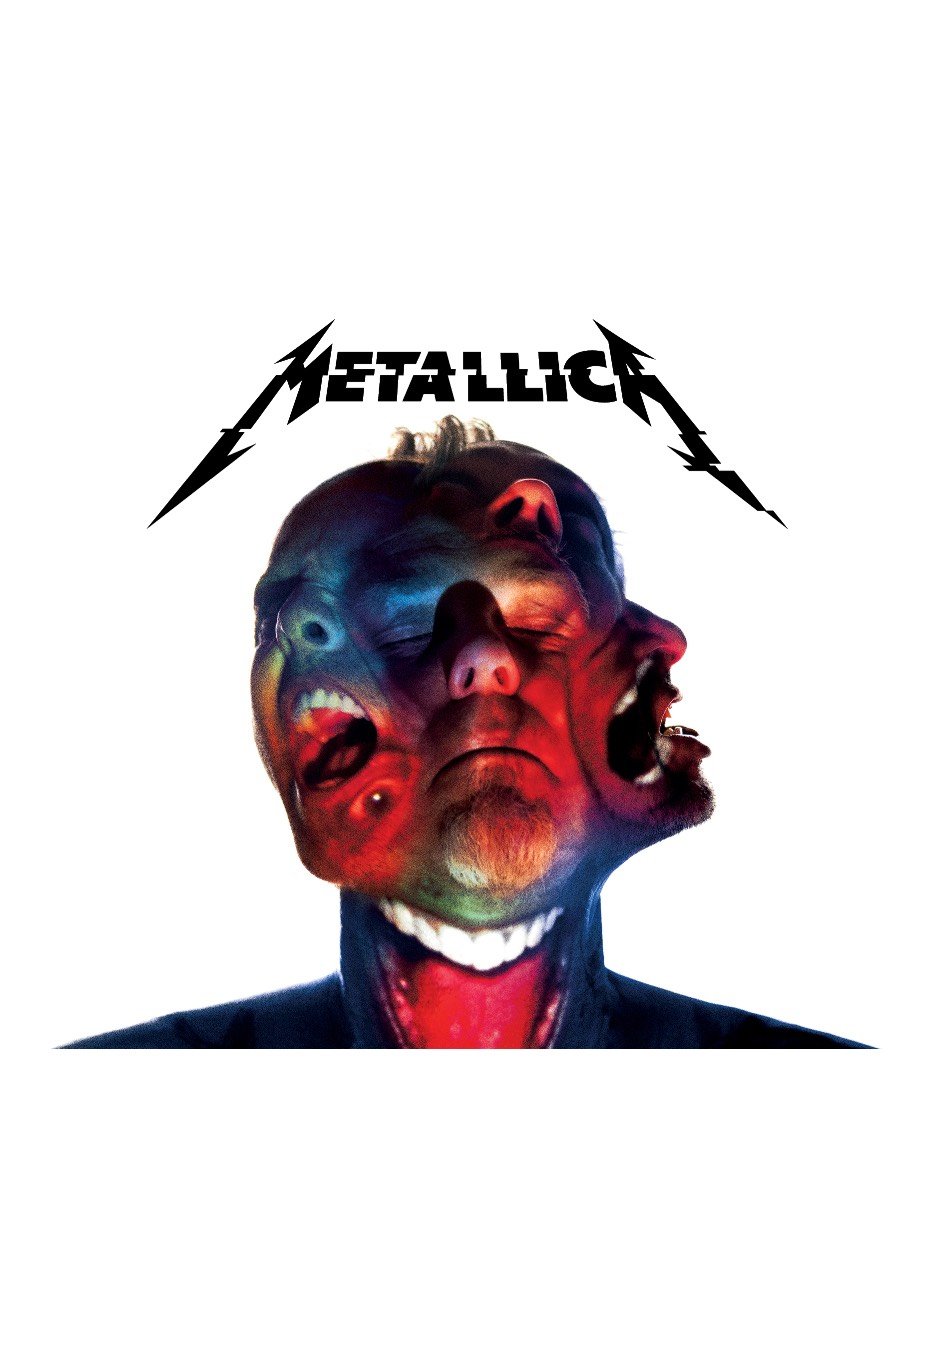 Metallica - Hardwired...To Self-Destruct Deluxe - Digipak 3 CD